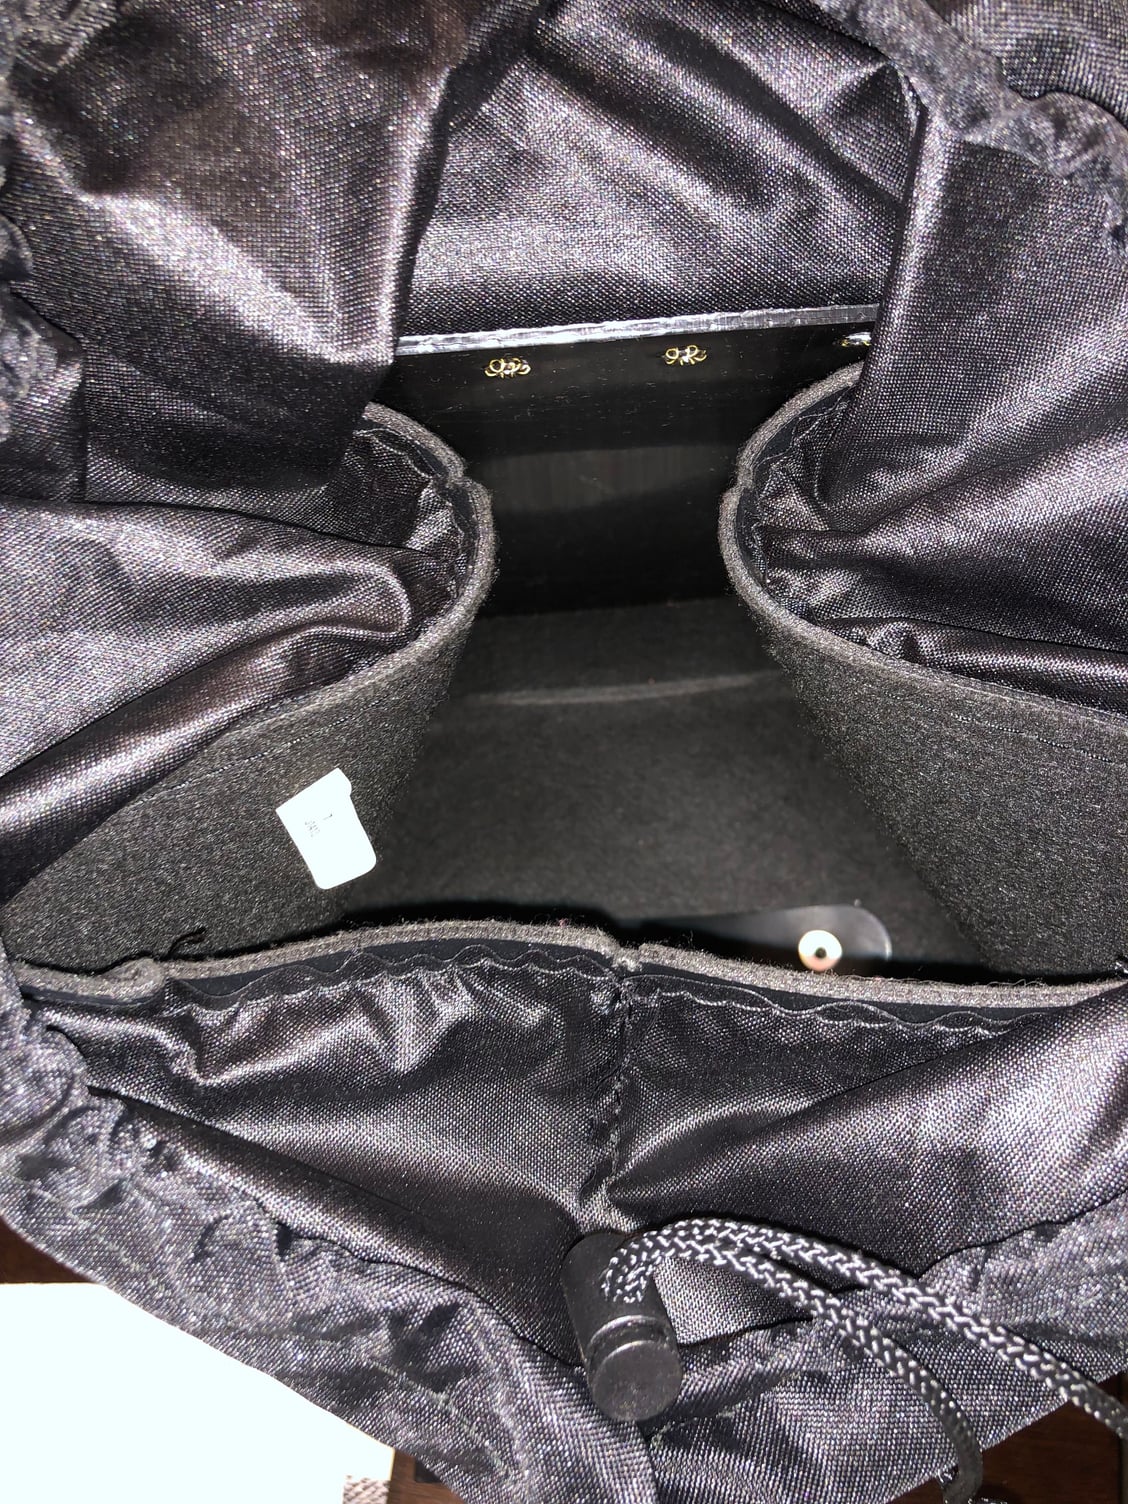 HD leather sissy bar messenger bag - Harley Davidson Forums